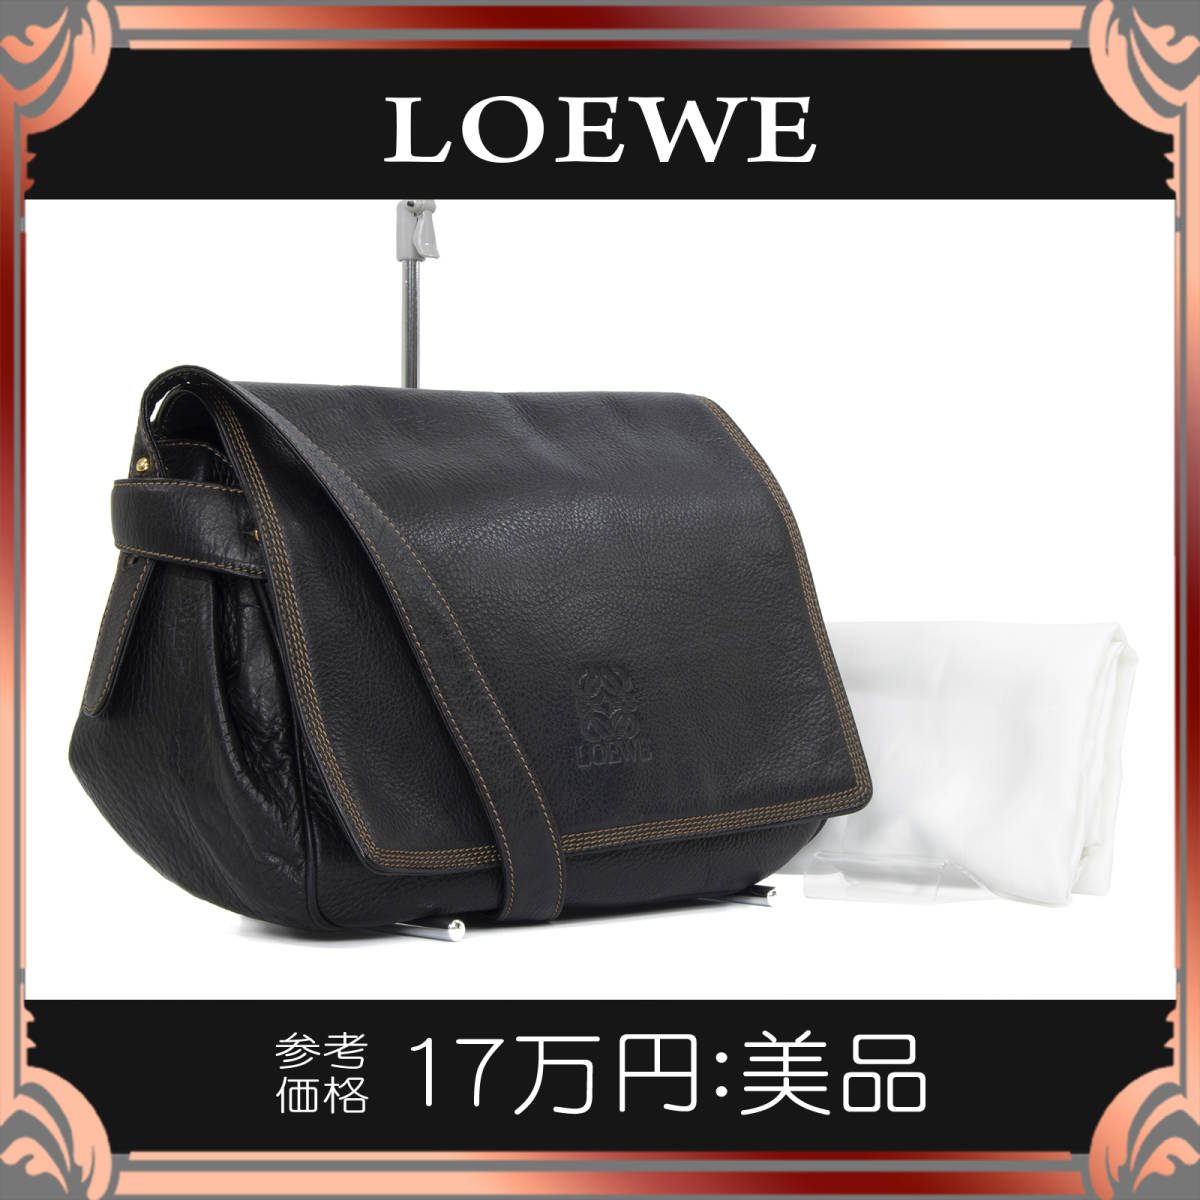 全額返金保証・送料無料】LOEWE/ロエベのショルダーバッグ